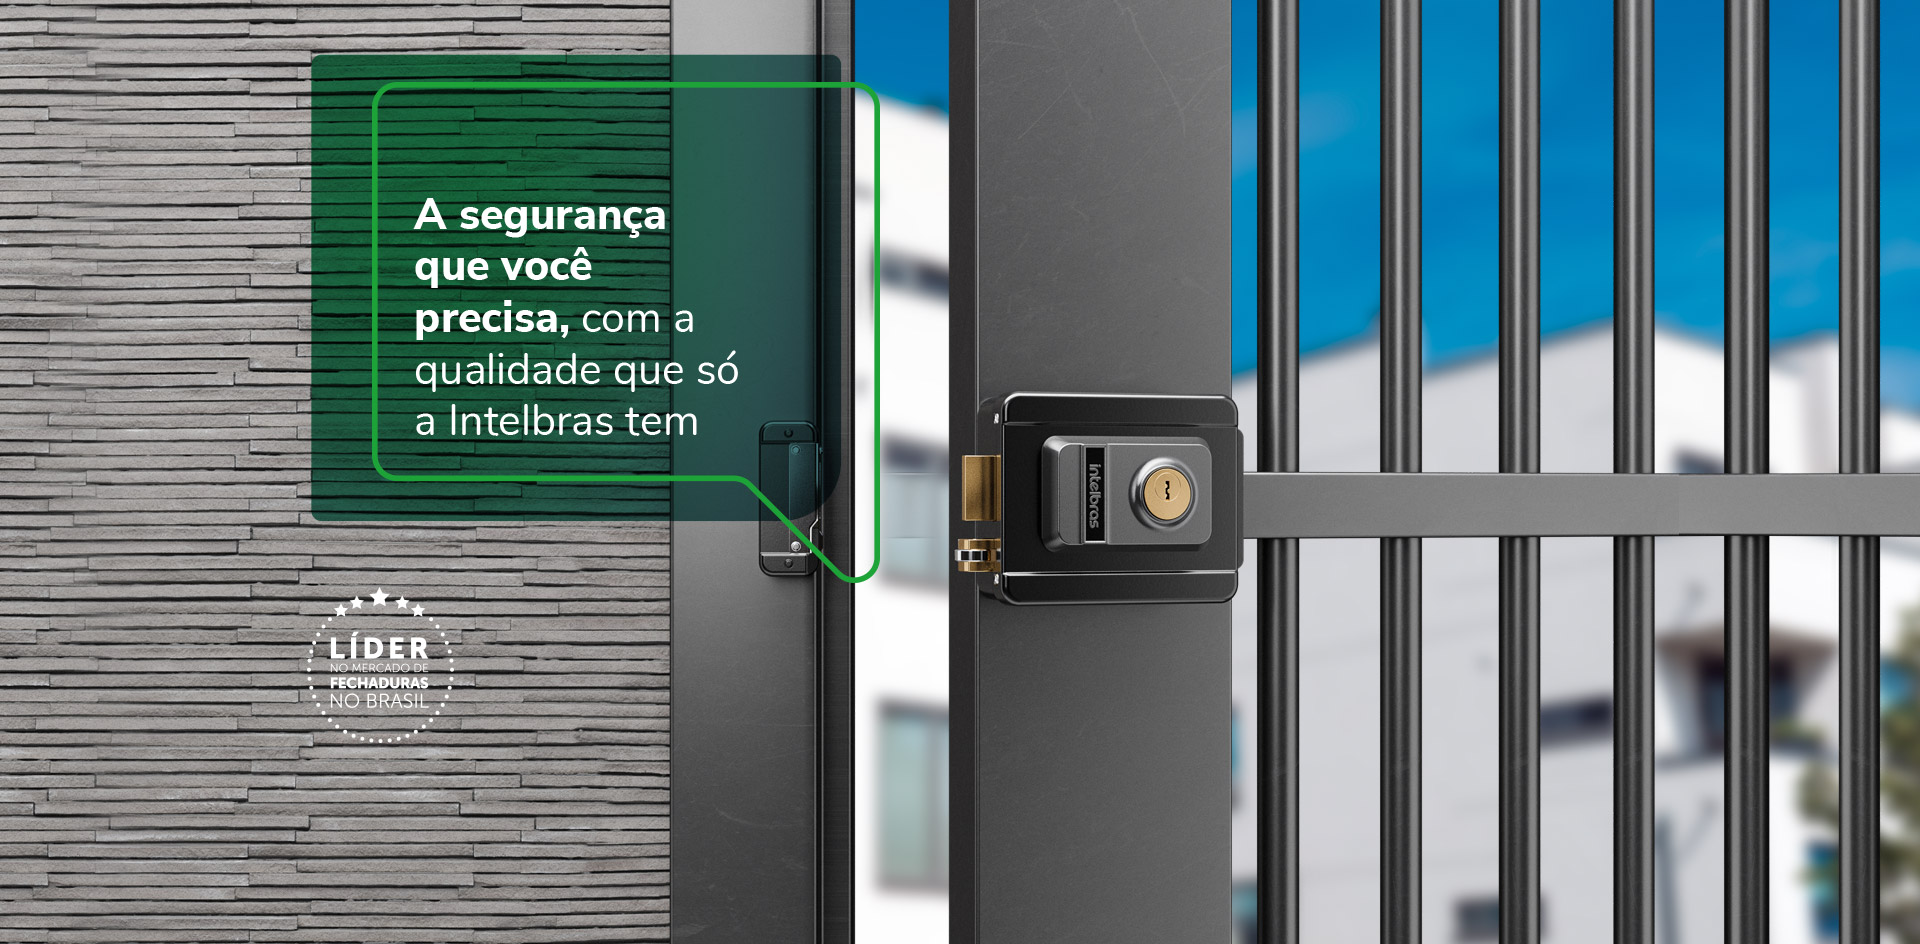 A segurança que você precisa, com a qualidade que só a Intelbras tem. Líder no mercado de fechaduras no Brasil.